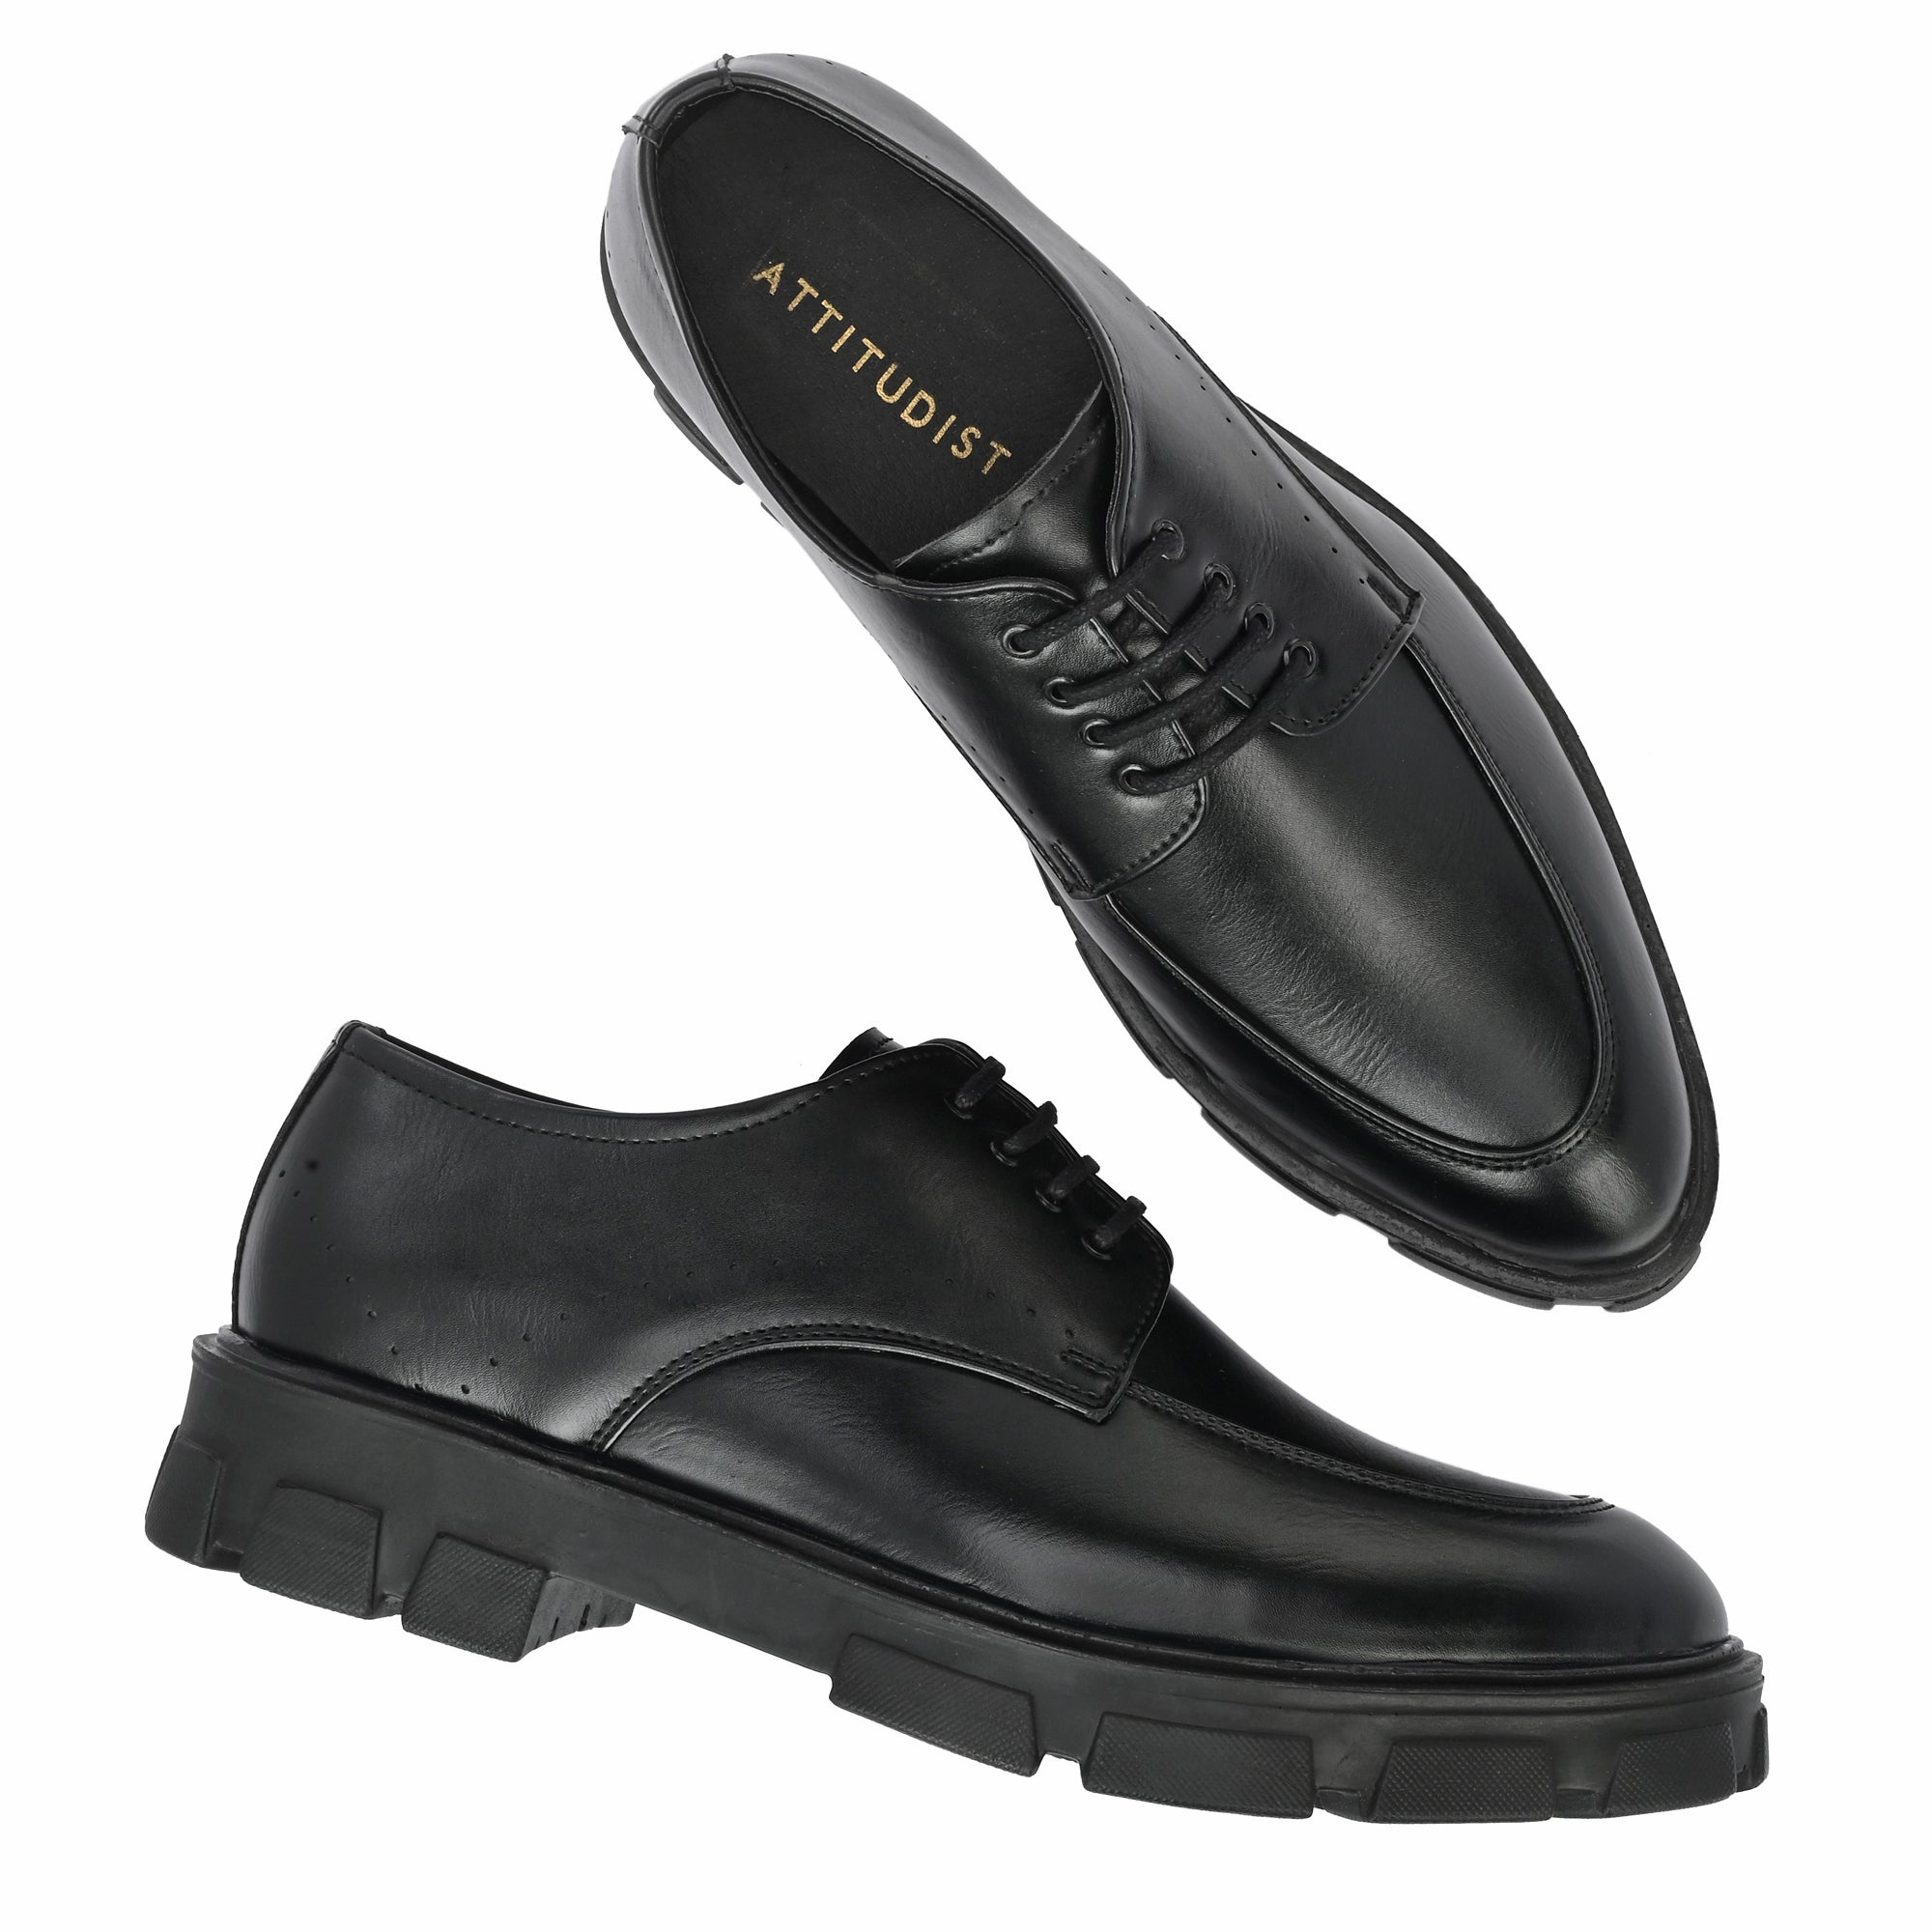 attitudist-black-double-stitched-lace-up-derby-shoes-for-men